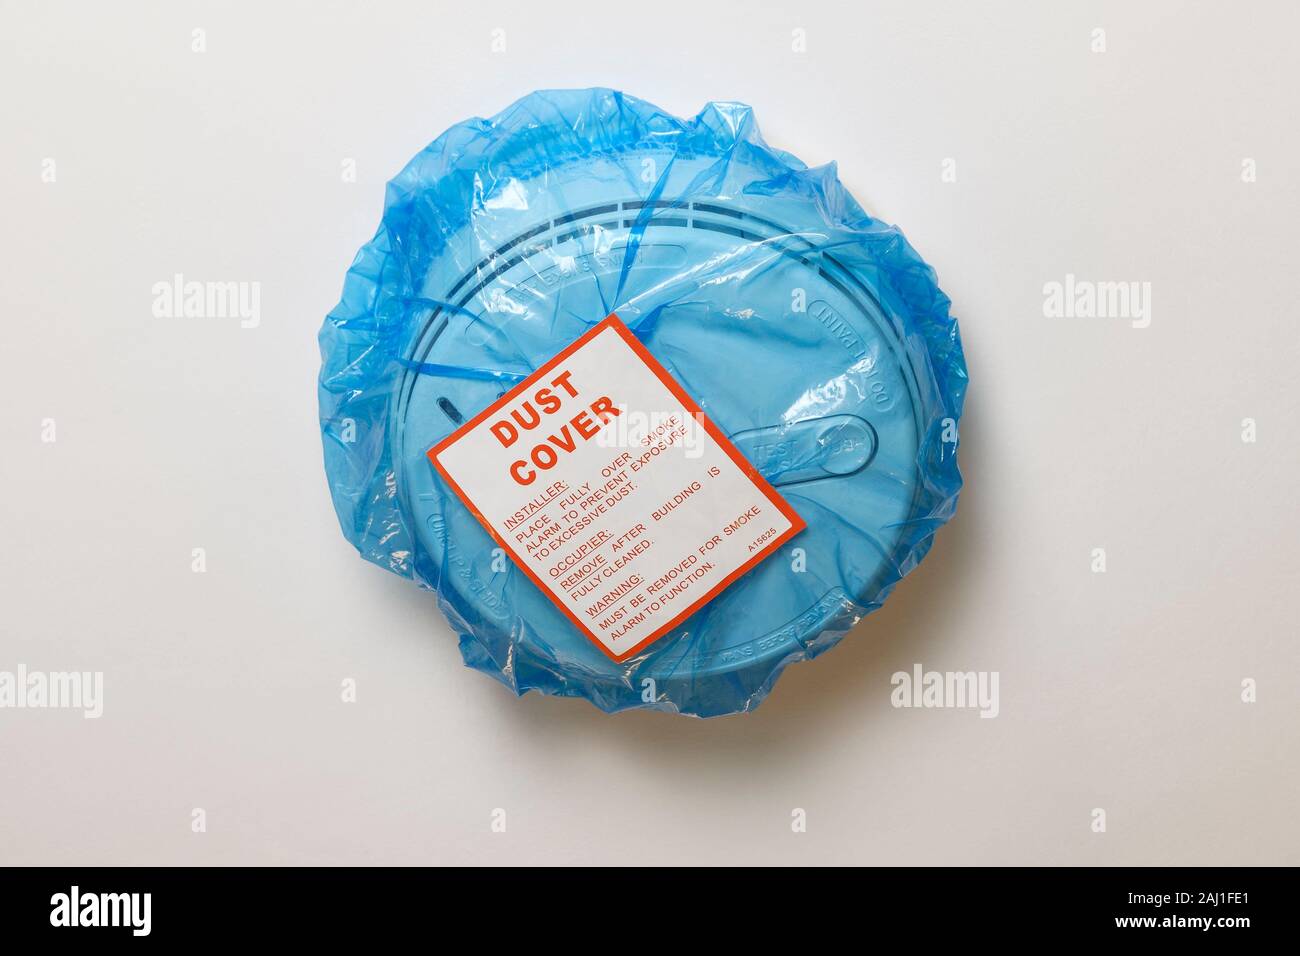 Eine blaue Plastiktüte Staubabdeckung auf ein Netz verdrahtet Rauchmelder  in einer BRITISCHEN inländischen Eigenschaft ausgestattet Stockfotografie -  Alamy